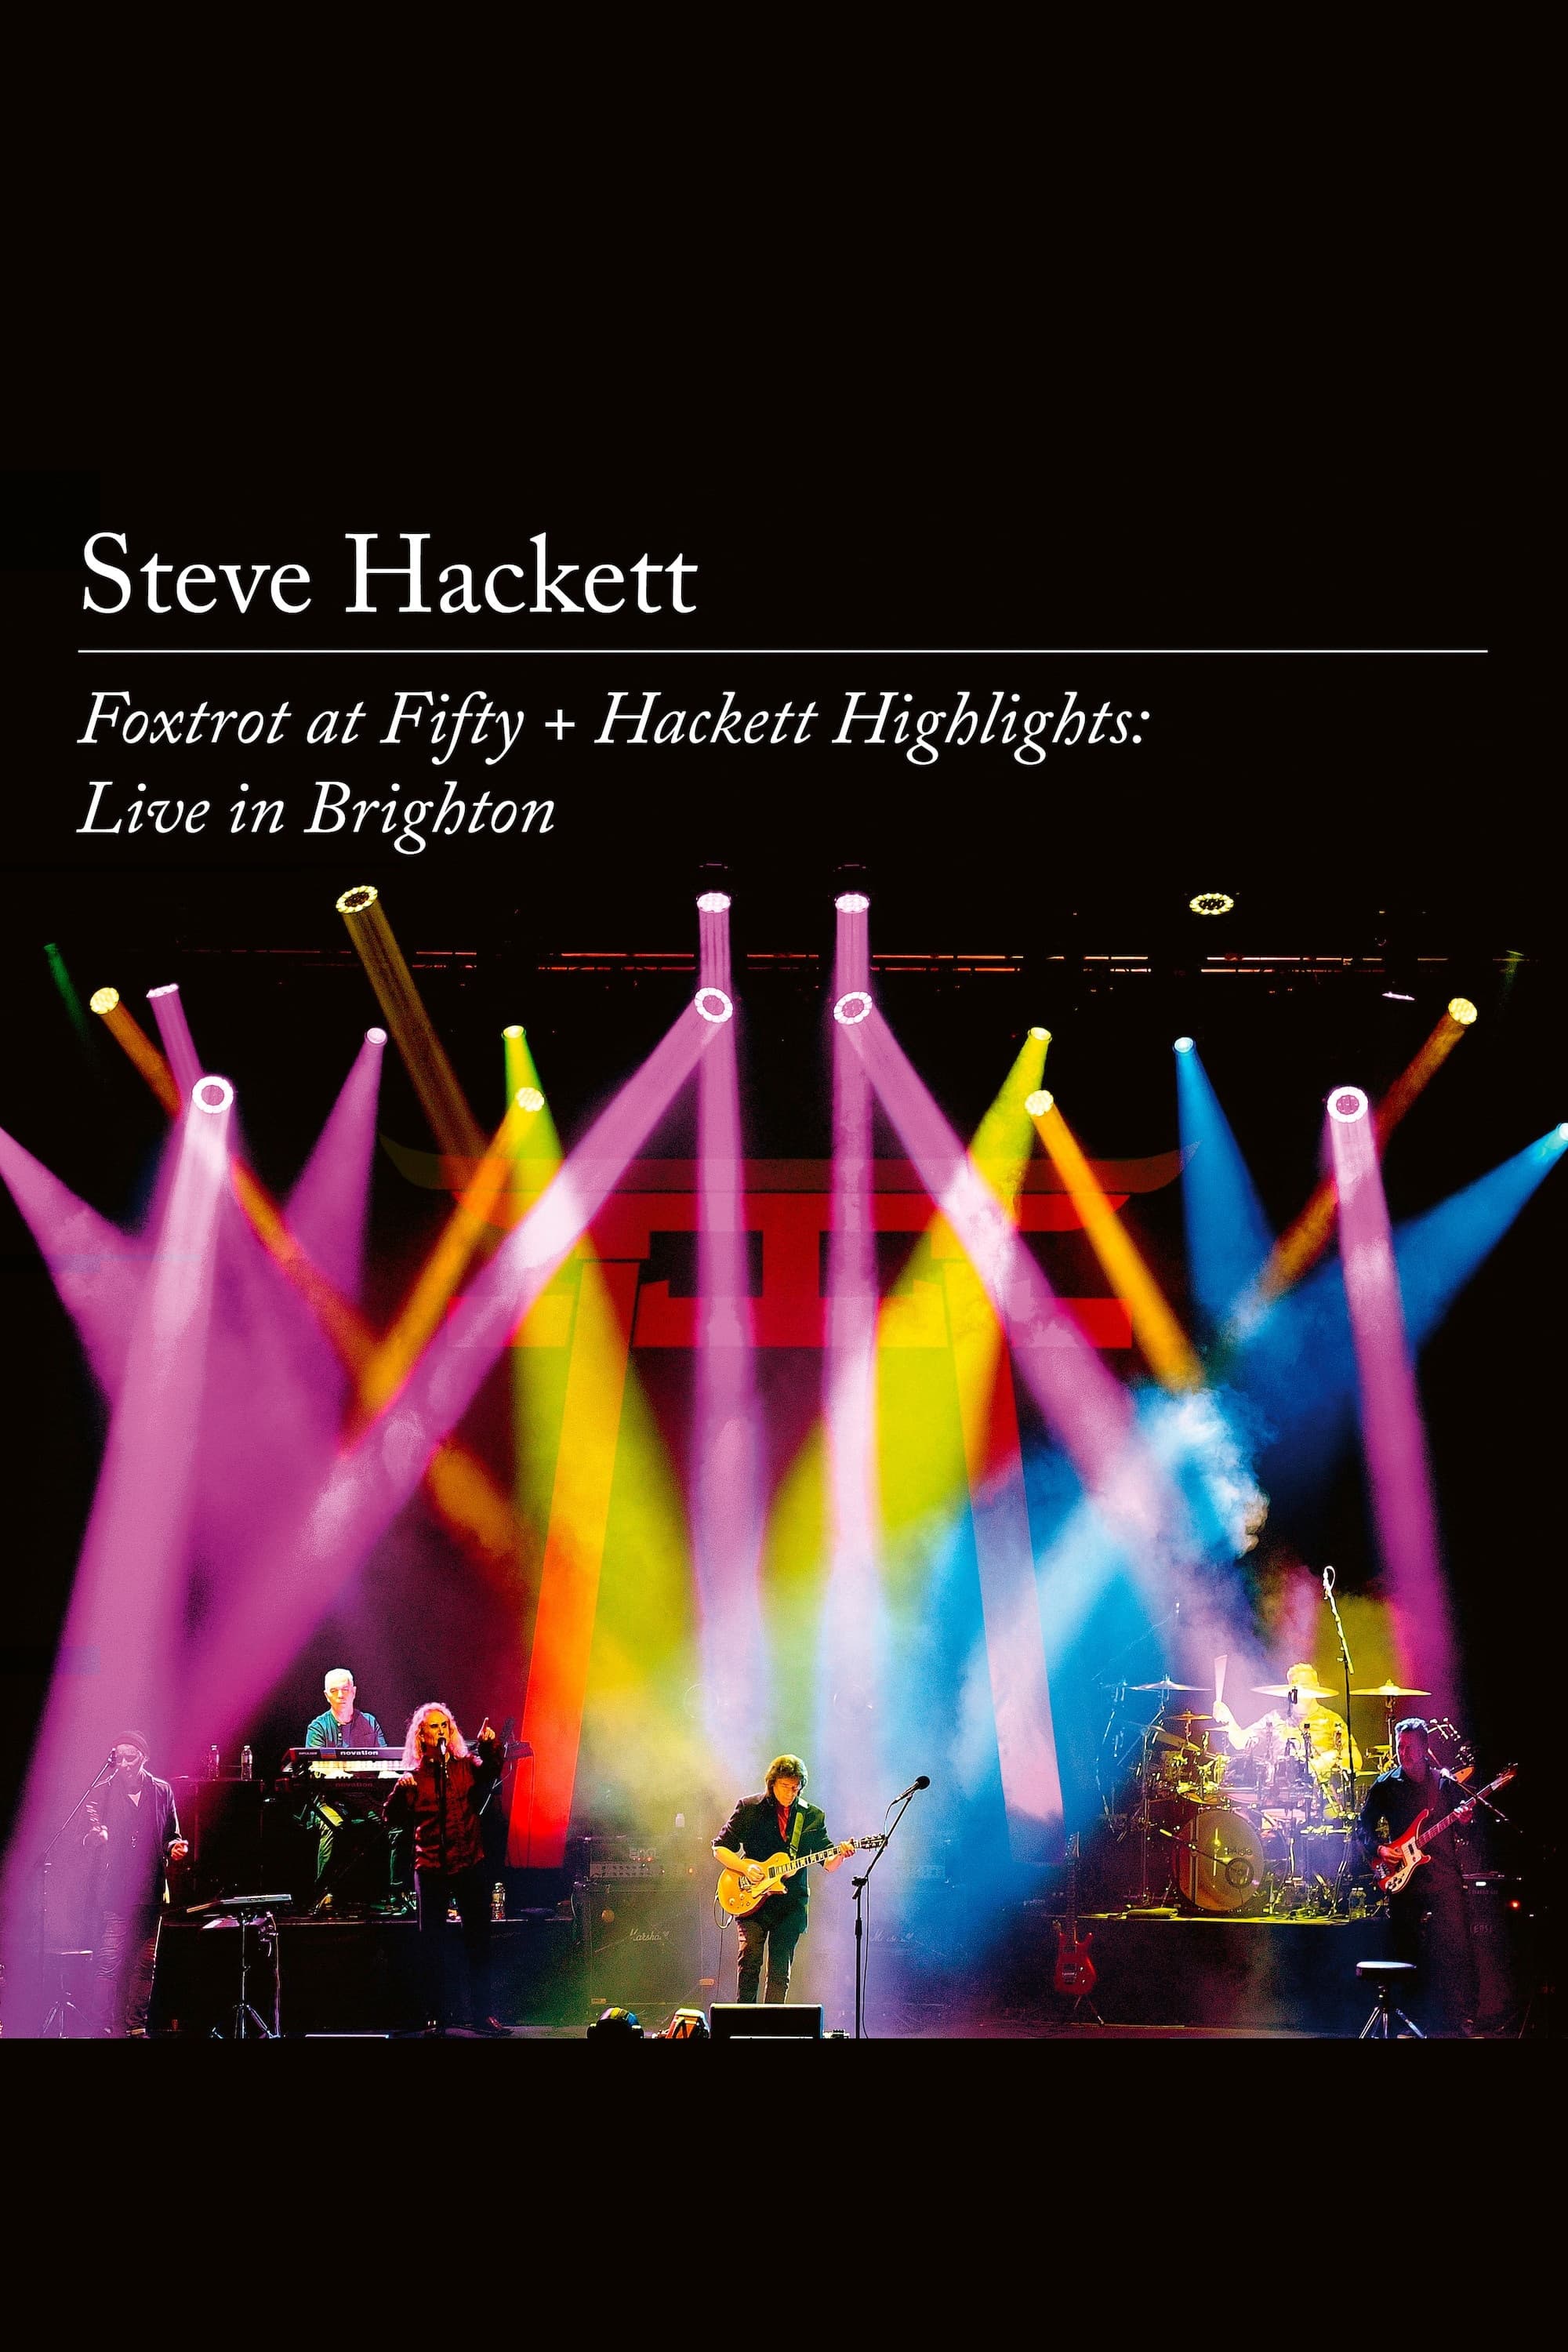 Steve Hackett – Foxtrot at Fifty + Hackett Highlights: Live in Brighton